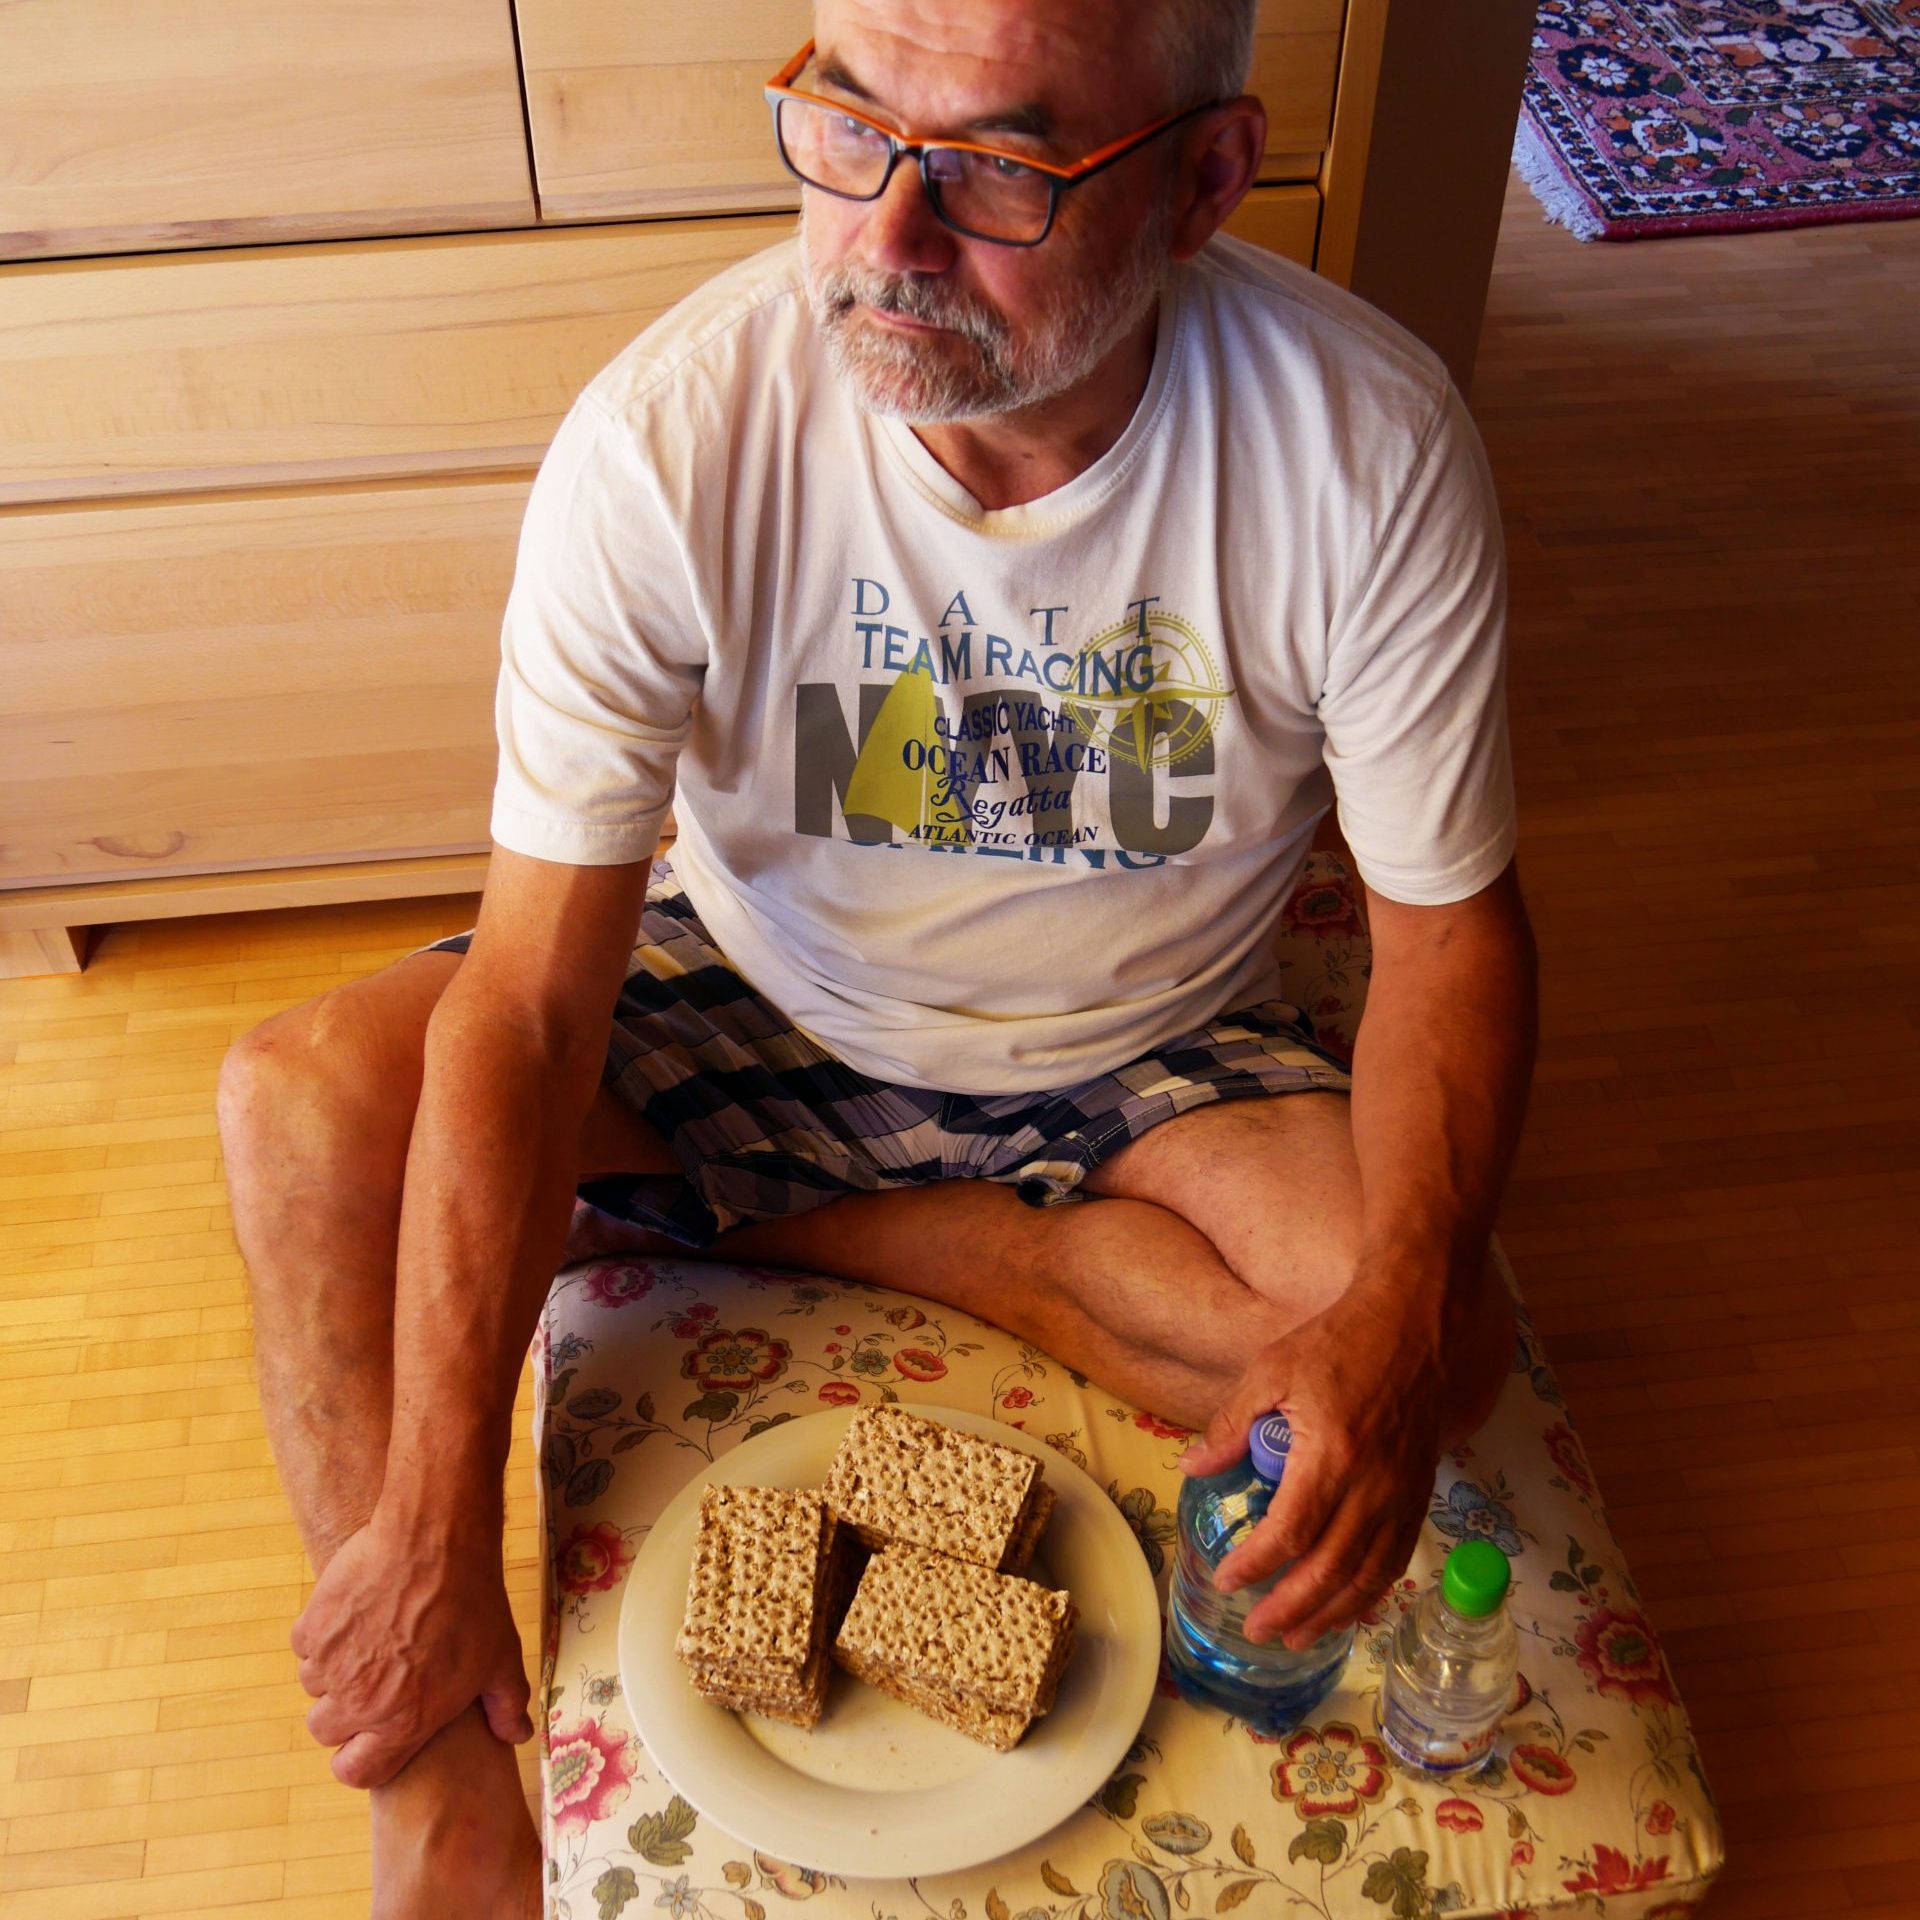 Ein Mann mit grauem Bart und weißem Shirt sitzt in seinem Wohnzimmer auf einem Polster am Boden. Vor ihm ein Teller mit drei scheiben Brot und eine Wasserflasche.